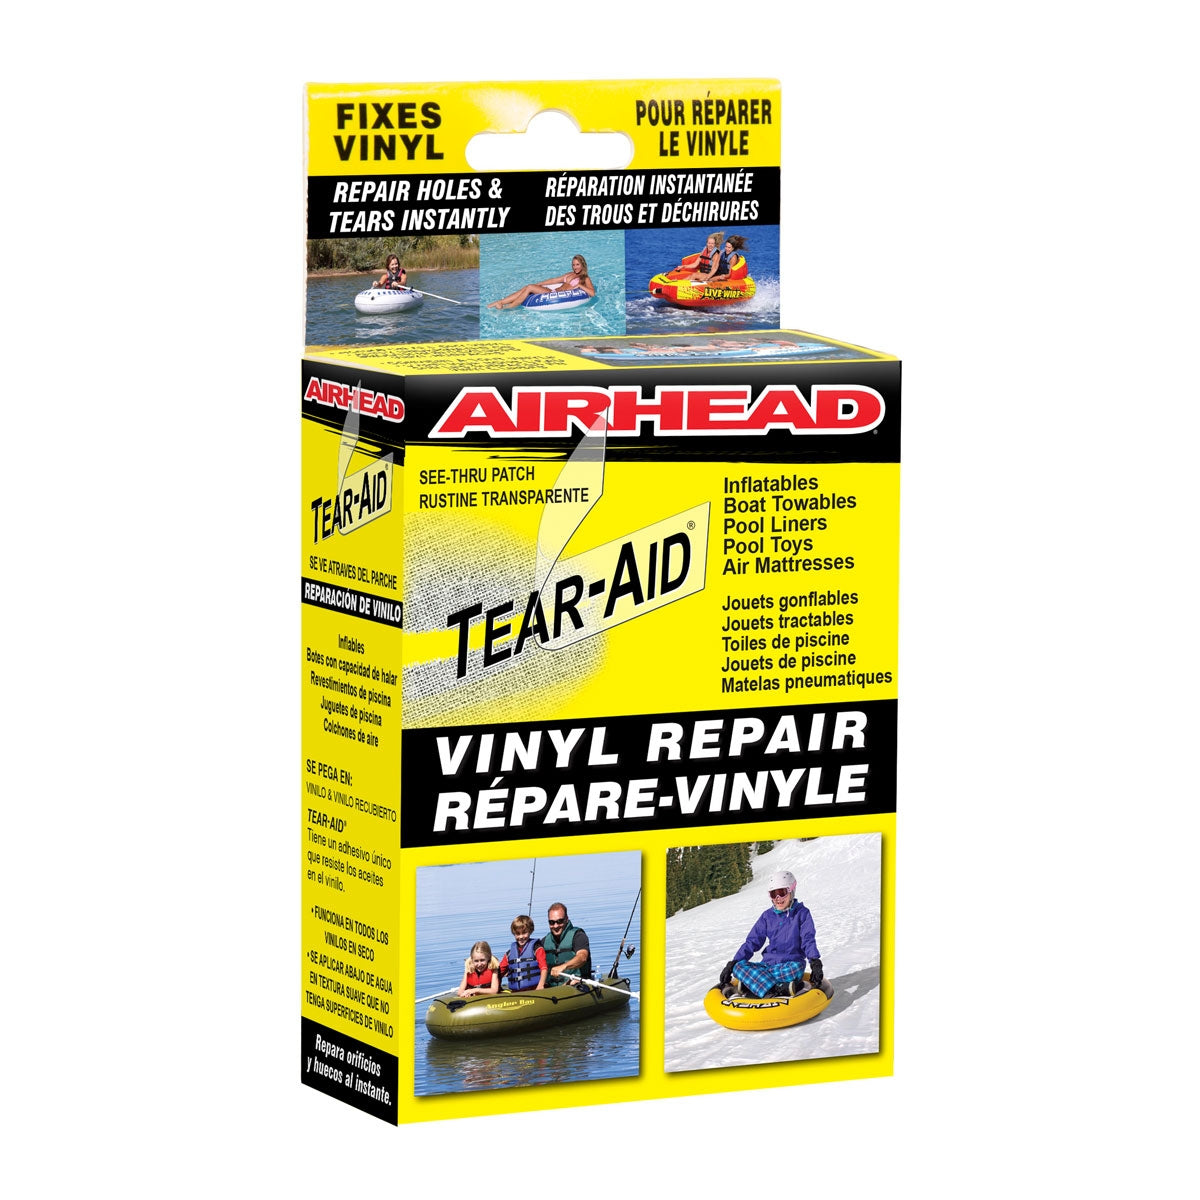 Tear-Aid Patch